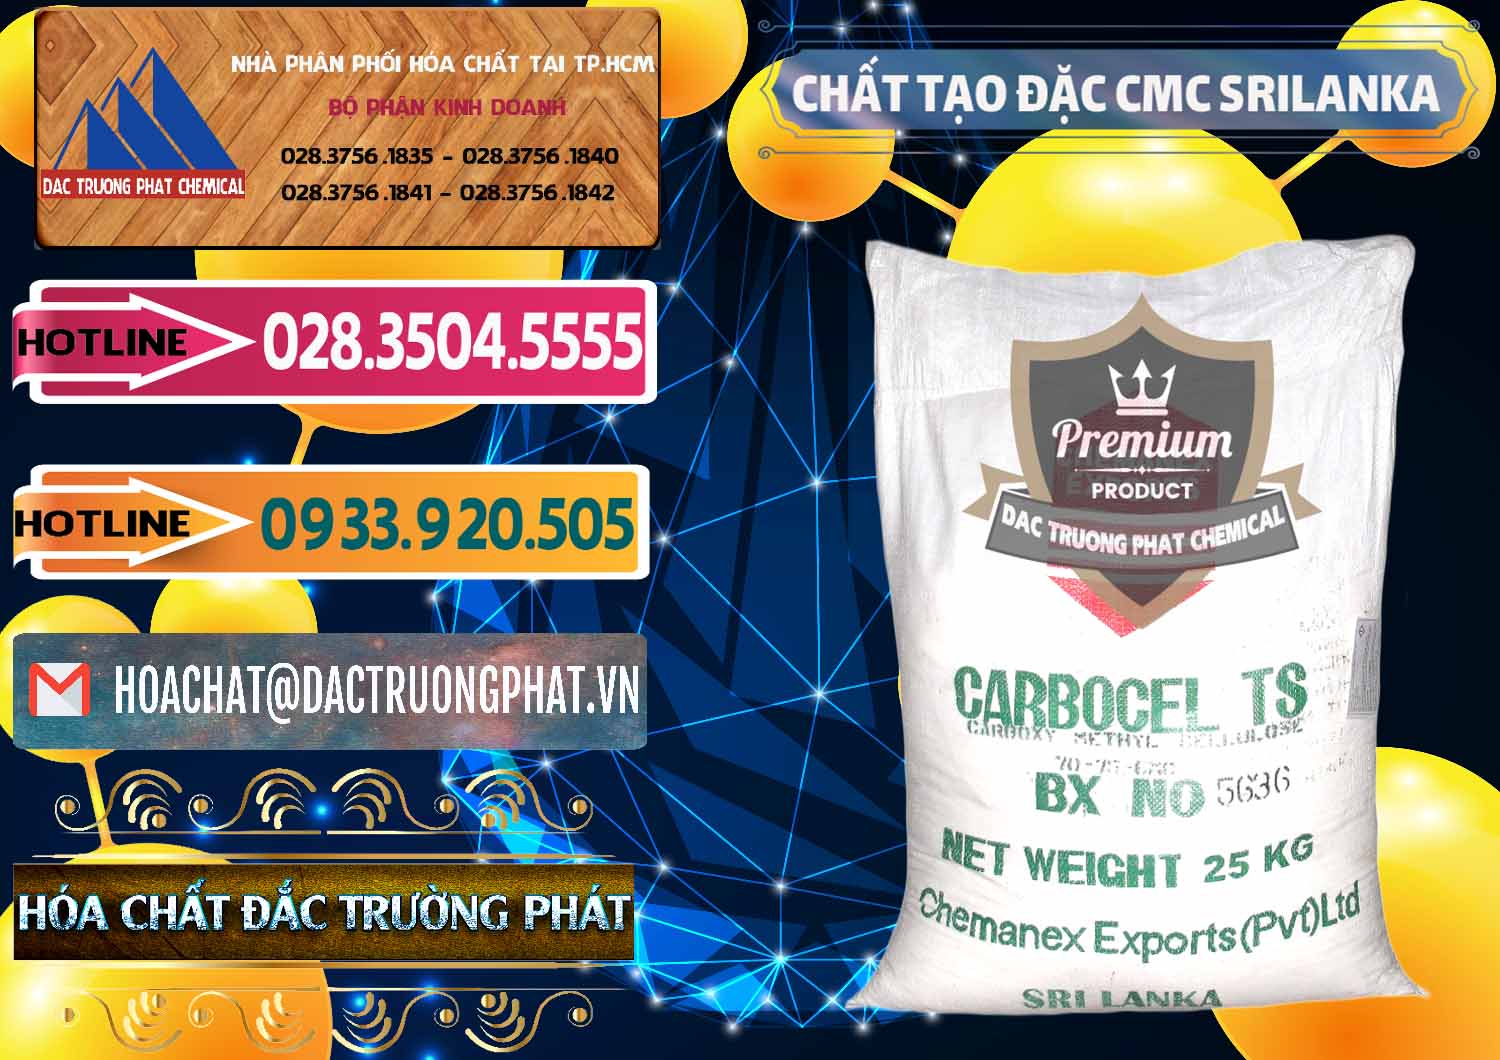 Chuyên kinh doanh & bán Chất Tạo Đặc CMC - Carboxyl Methyl Cellulose Srilanka - 0045 - Nơi chuyên kinh doanh & phân phối hóa chất tại TP.HCM - dactruongphat.vn